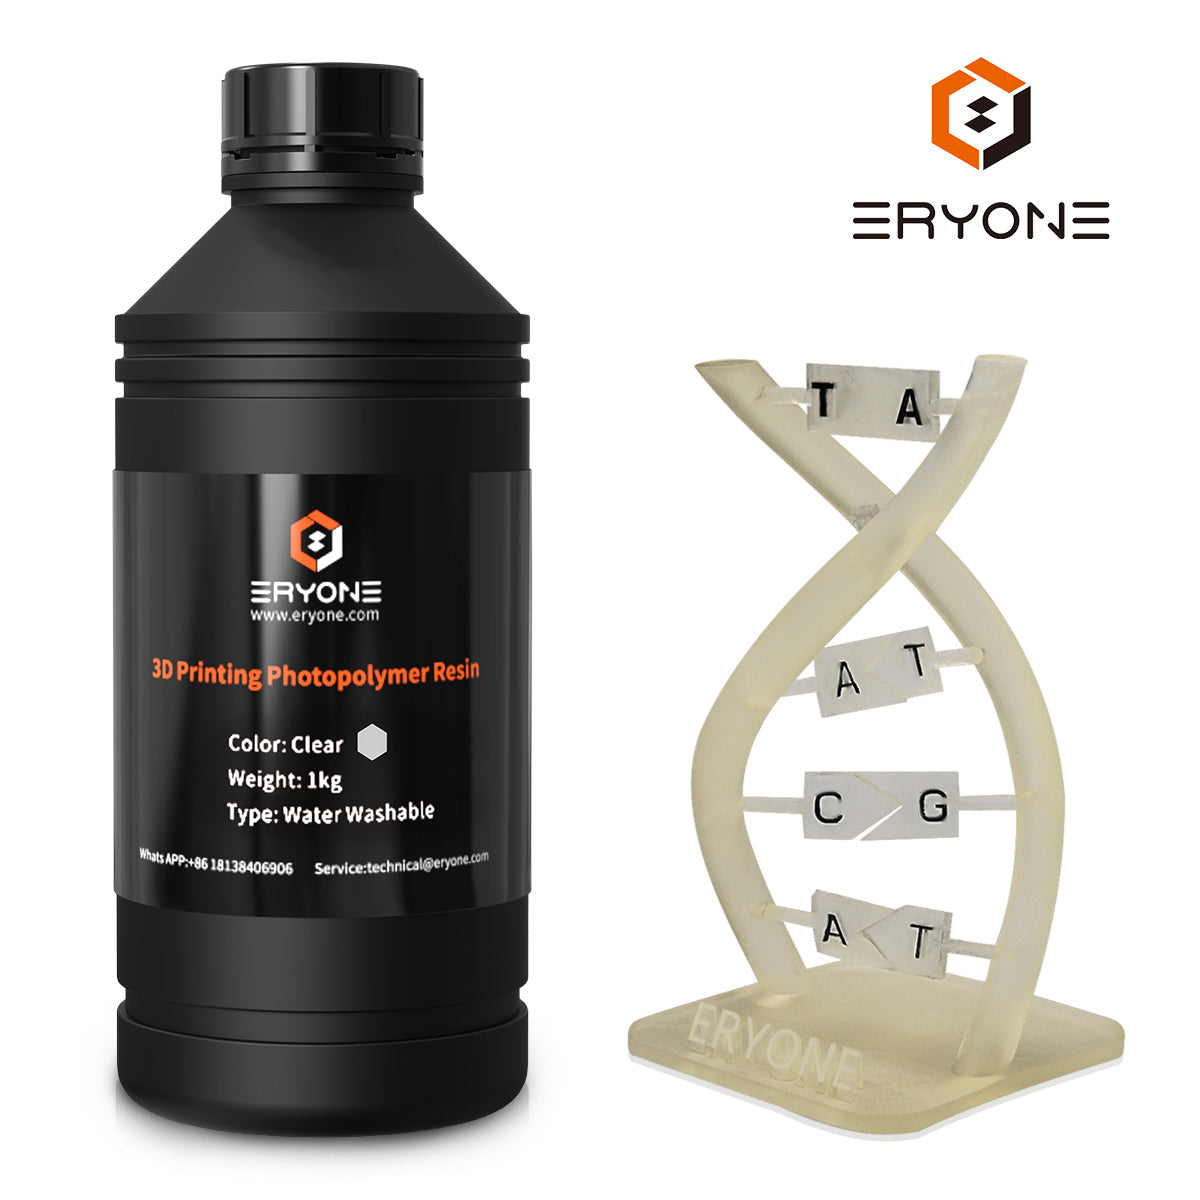 Eryone water washable 3D printer resin 1KG